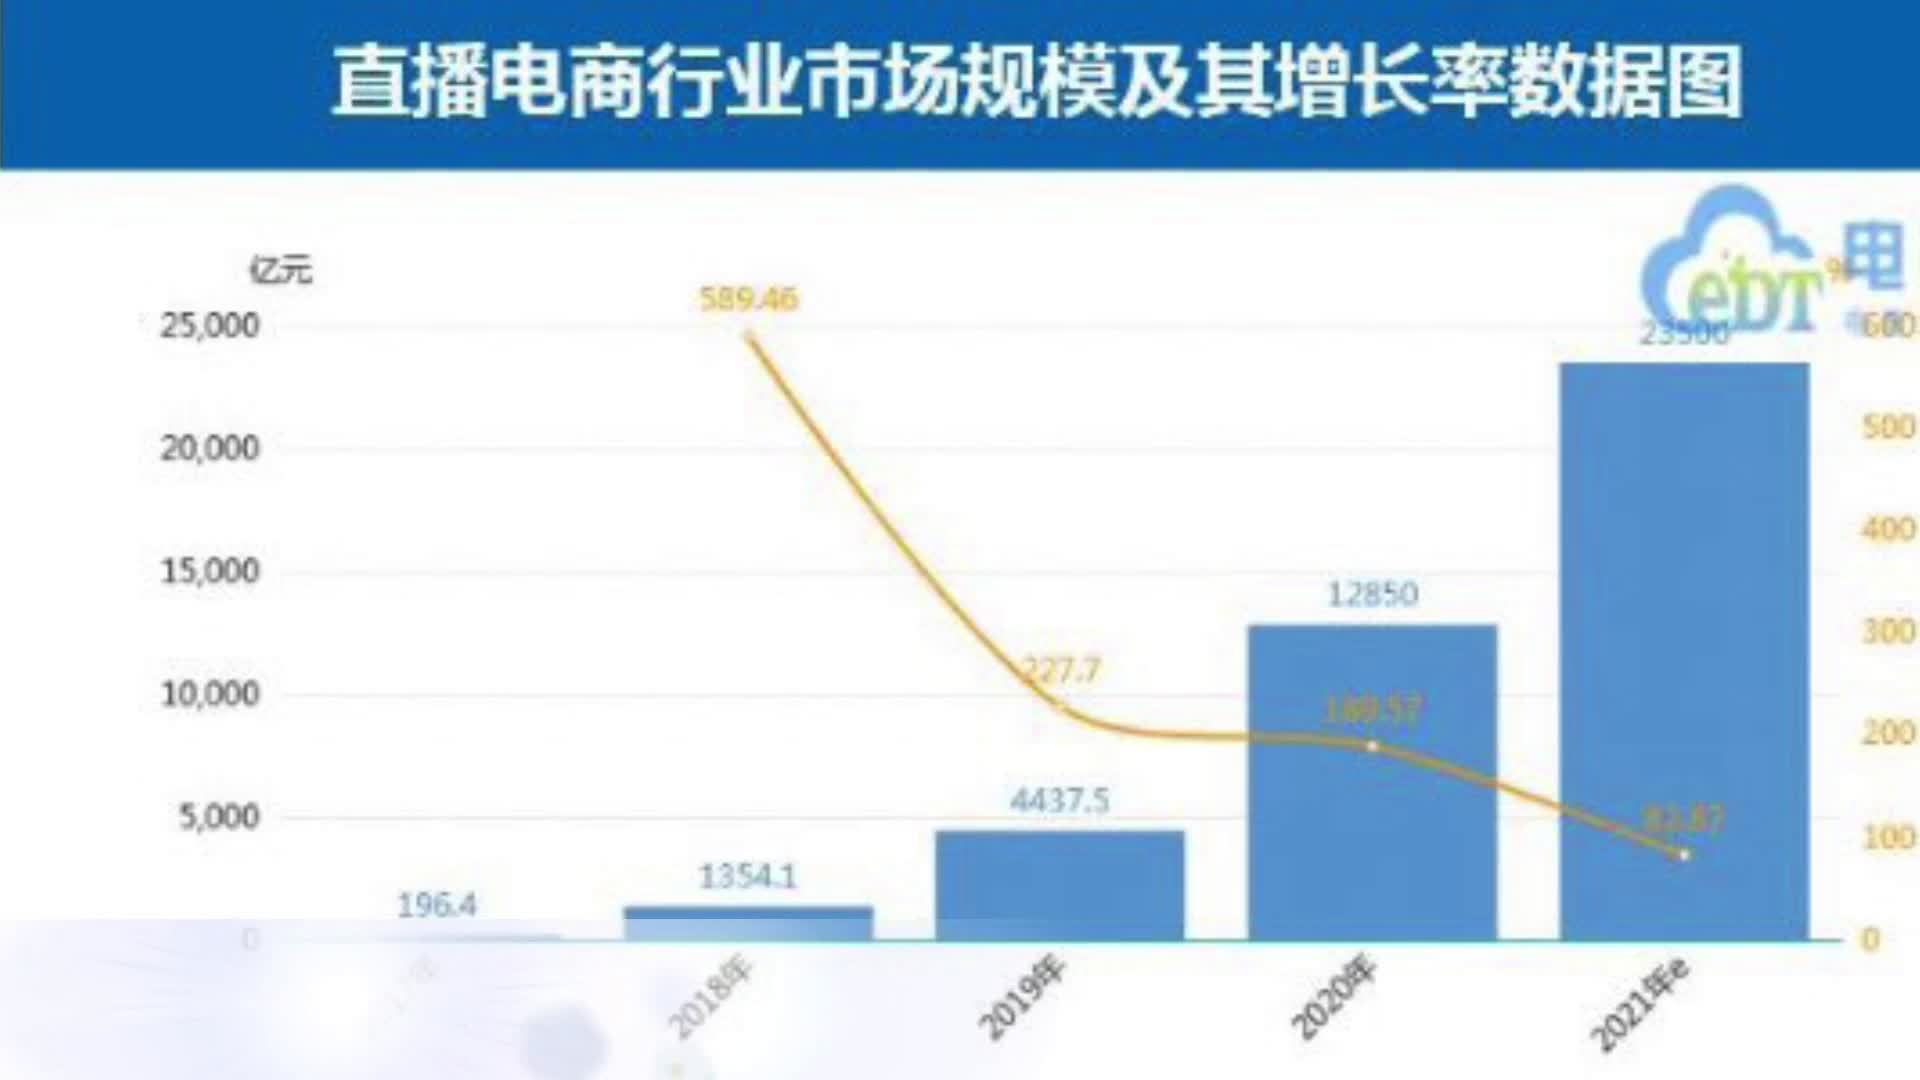 2021年中国直播电商市场规模将突破23000亿大关